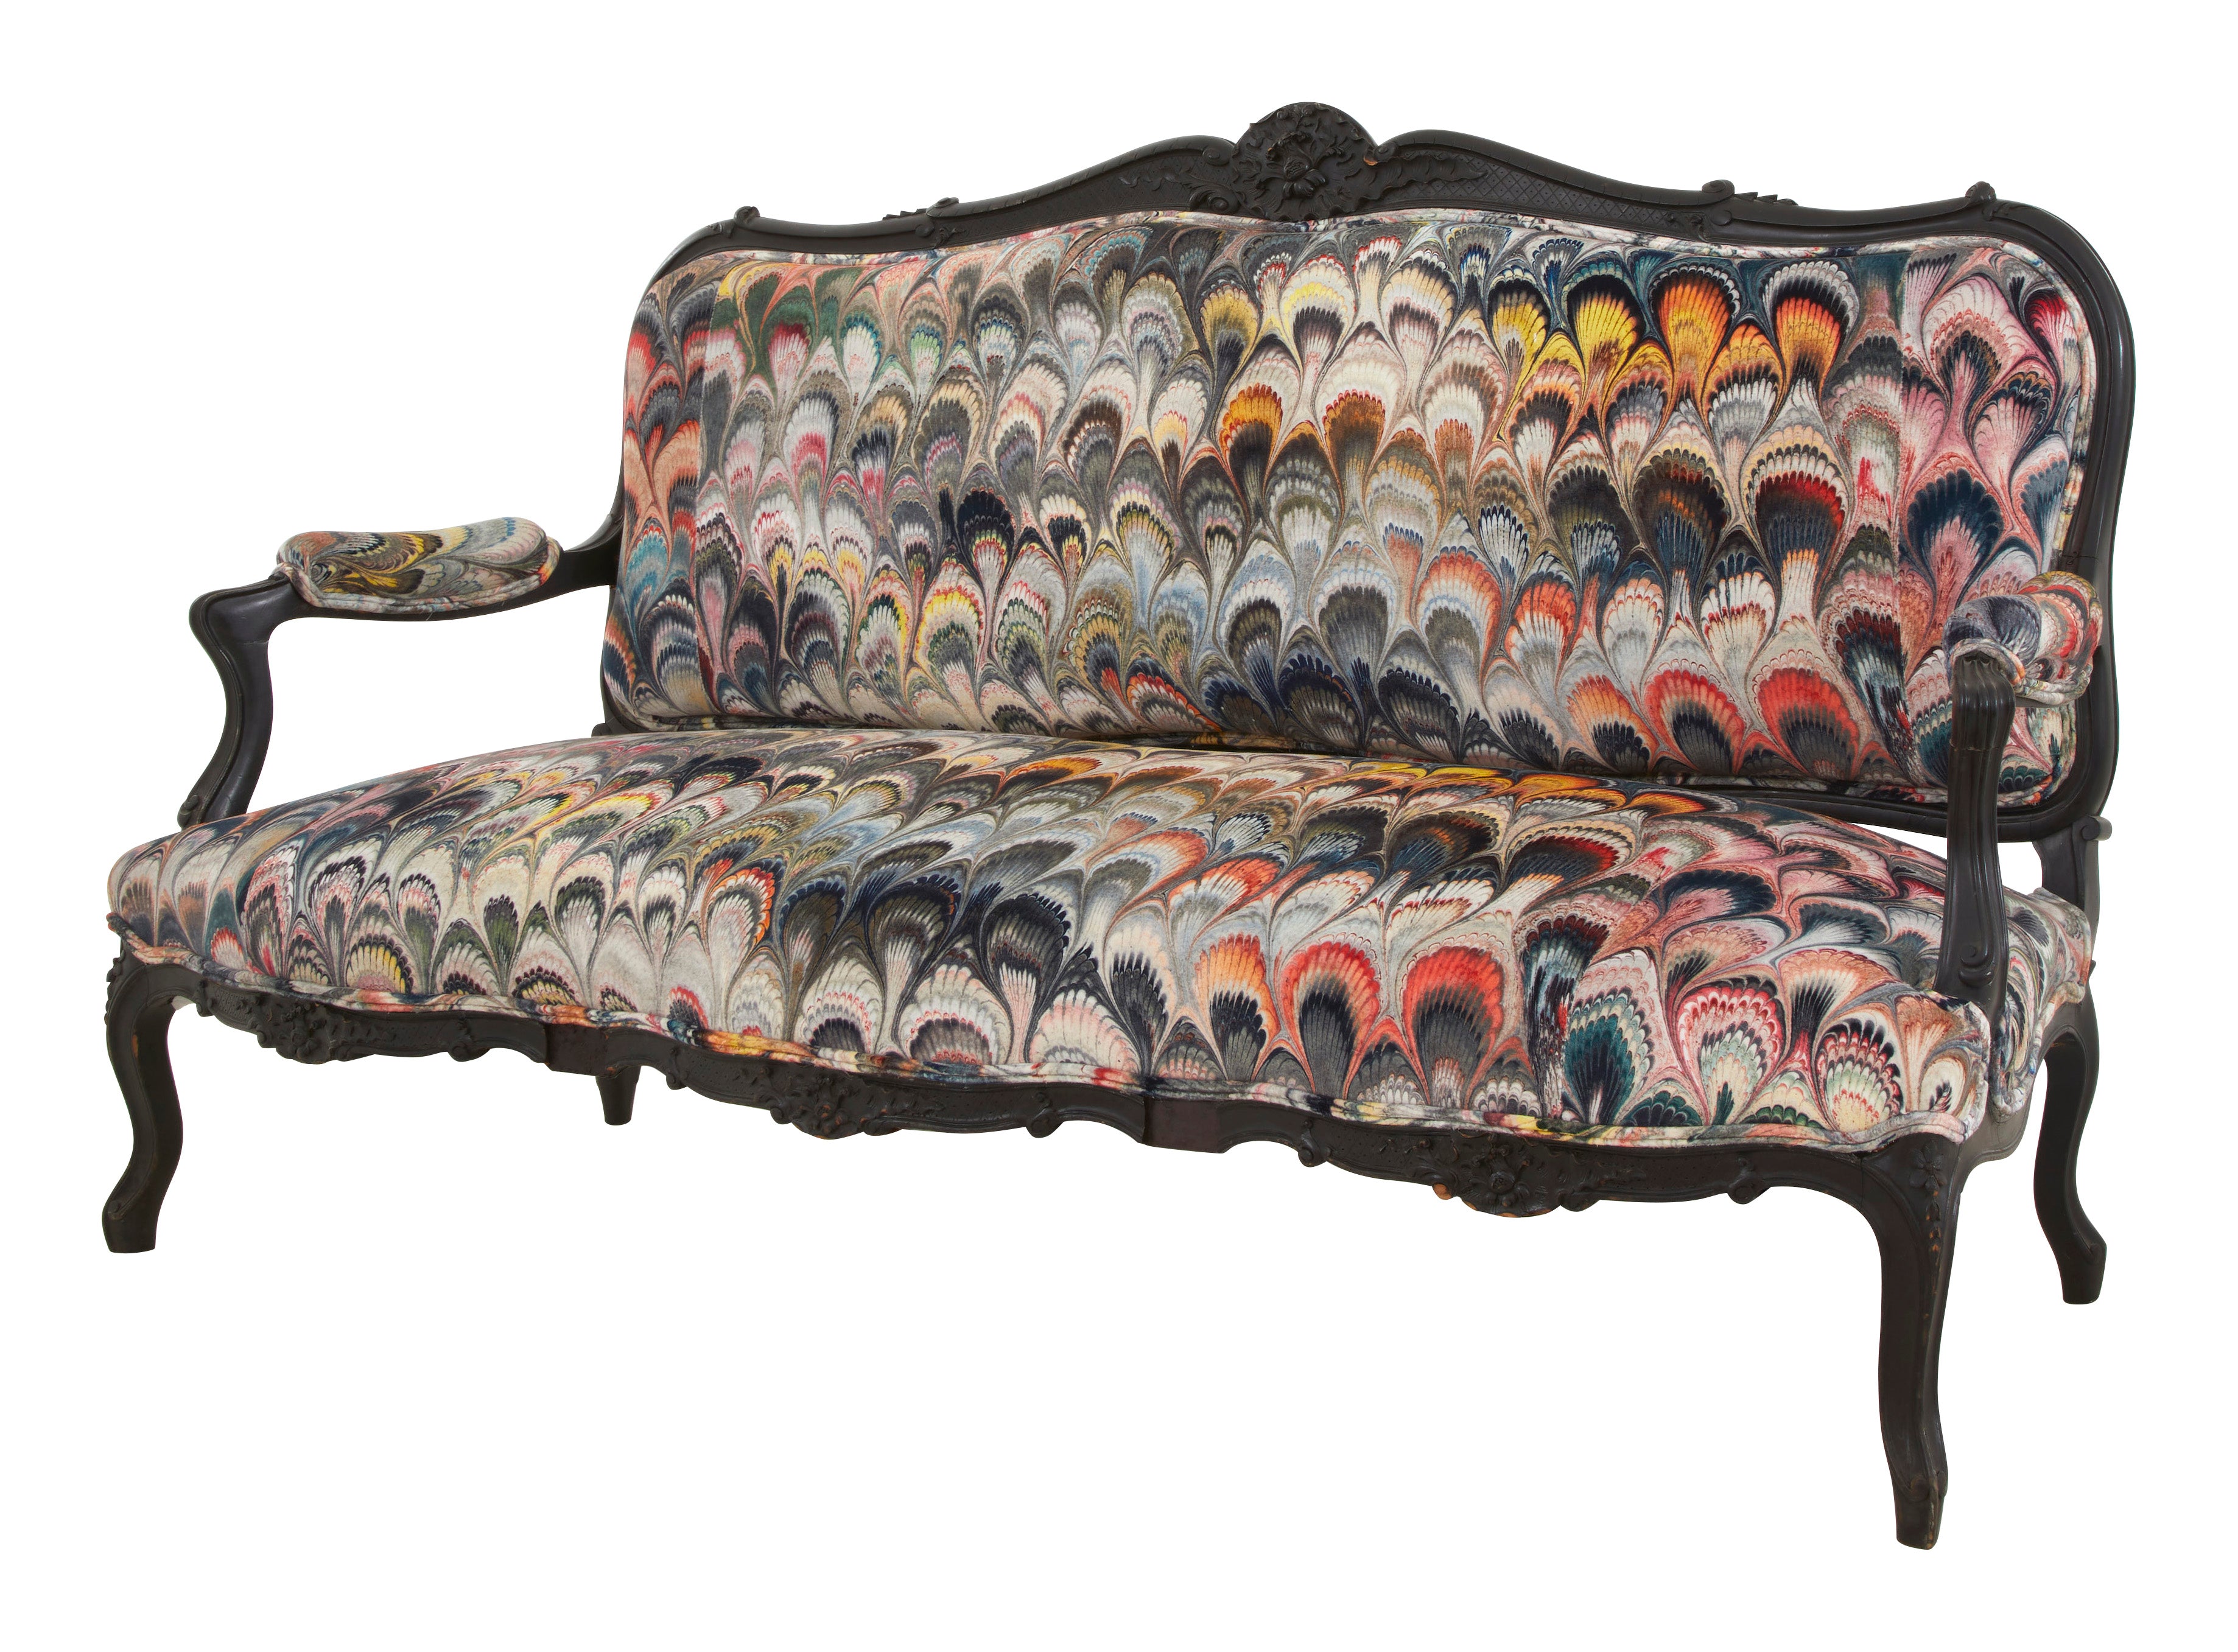 Antique Louis XV Sofa